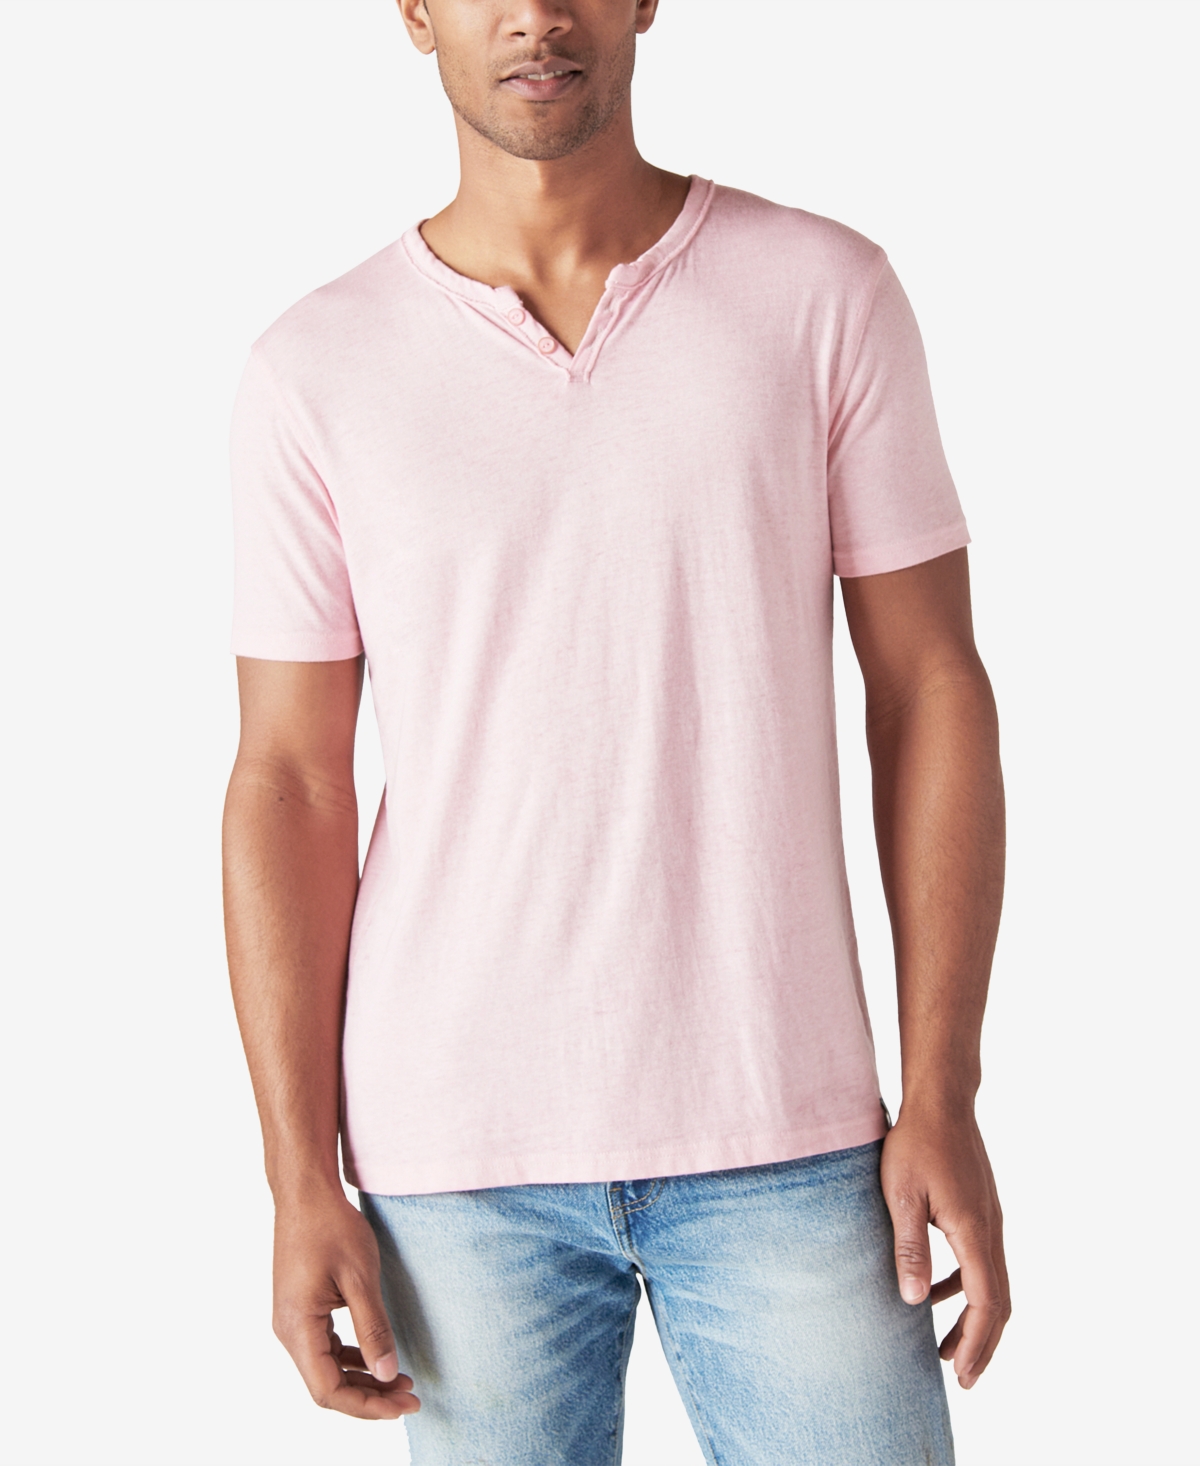 Men's Plaid Cloud Soft Long-Sleeve Flannel Shirt